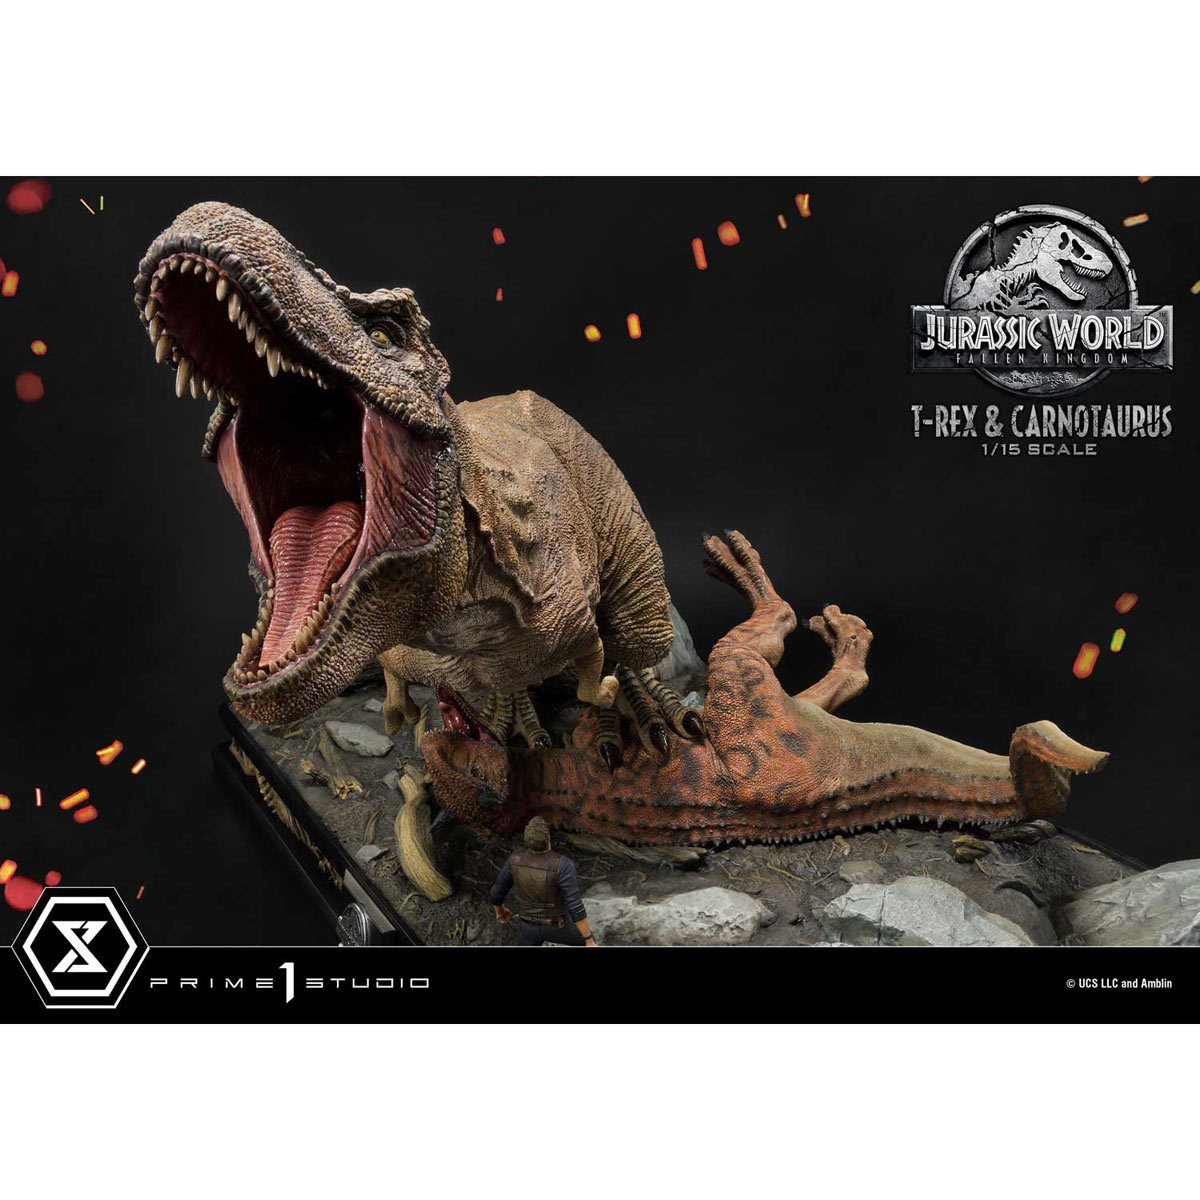 T-Rex & Carnotaurus Statue by Prime 1 Studio